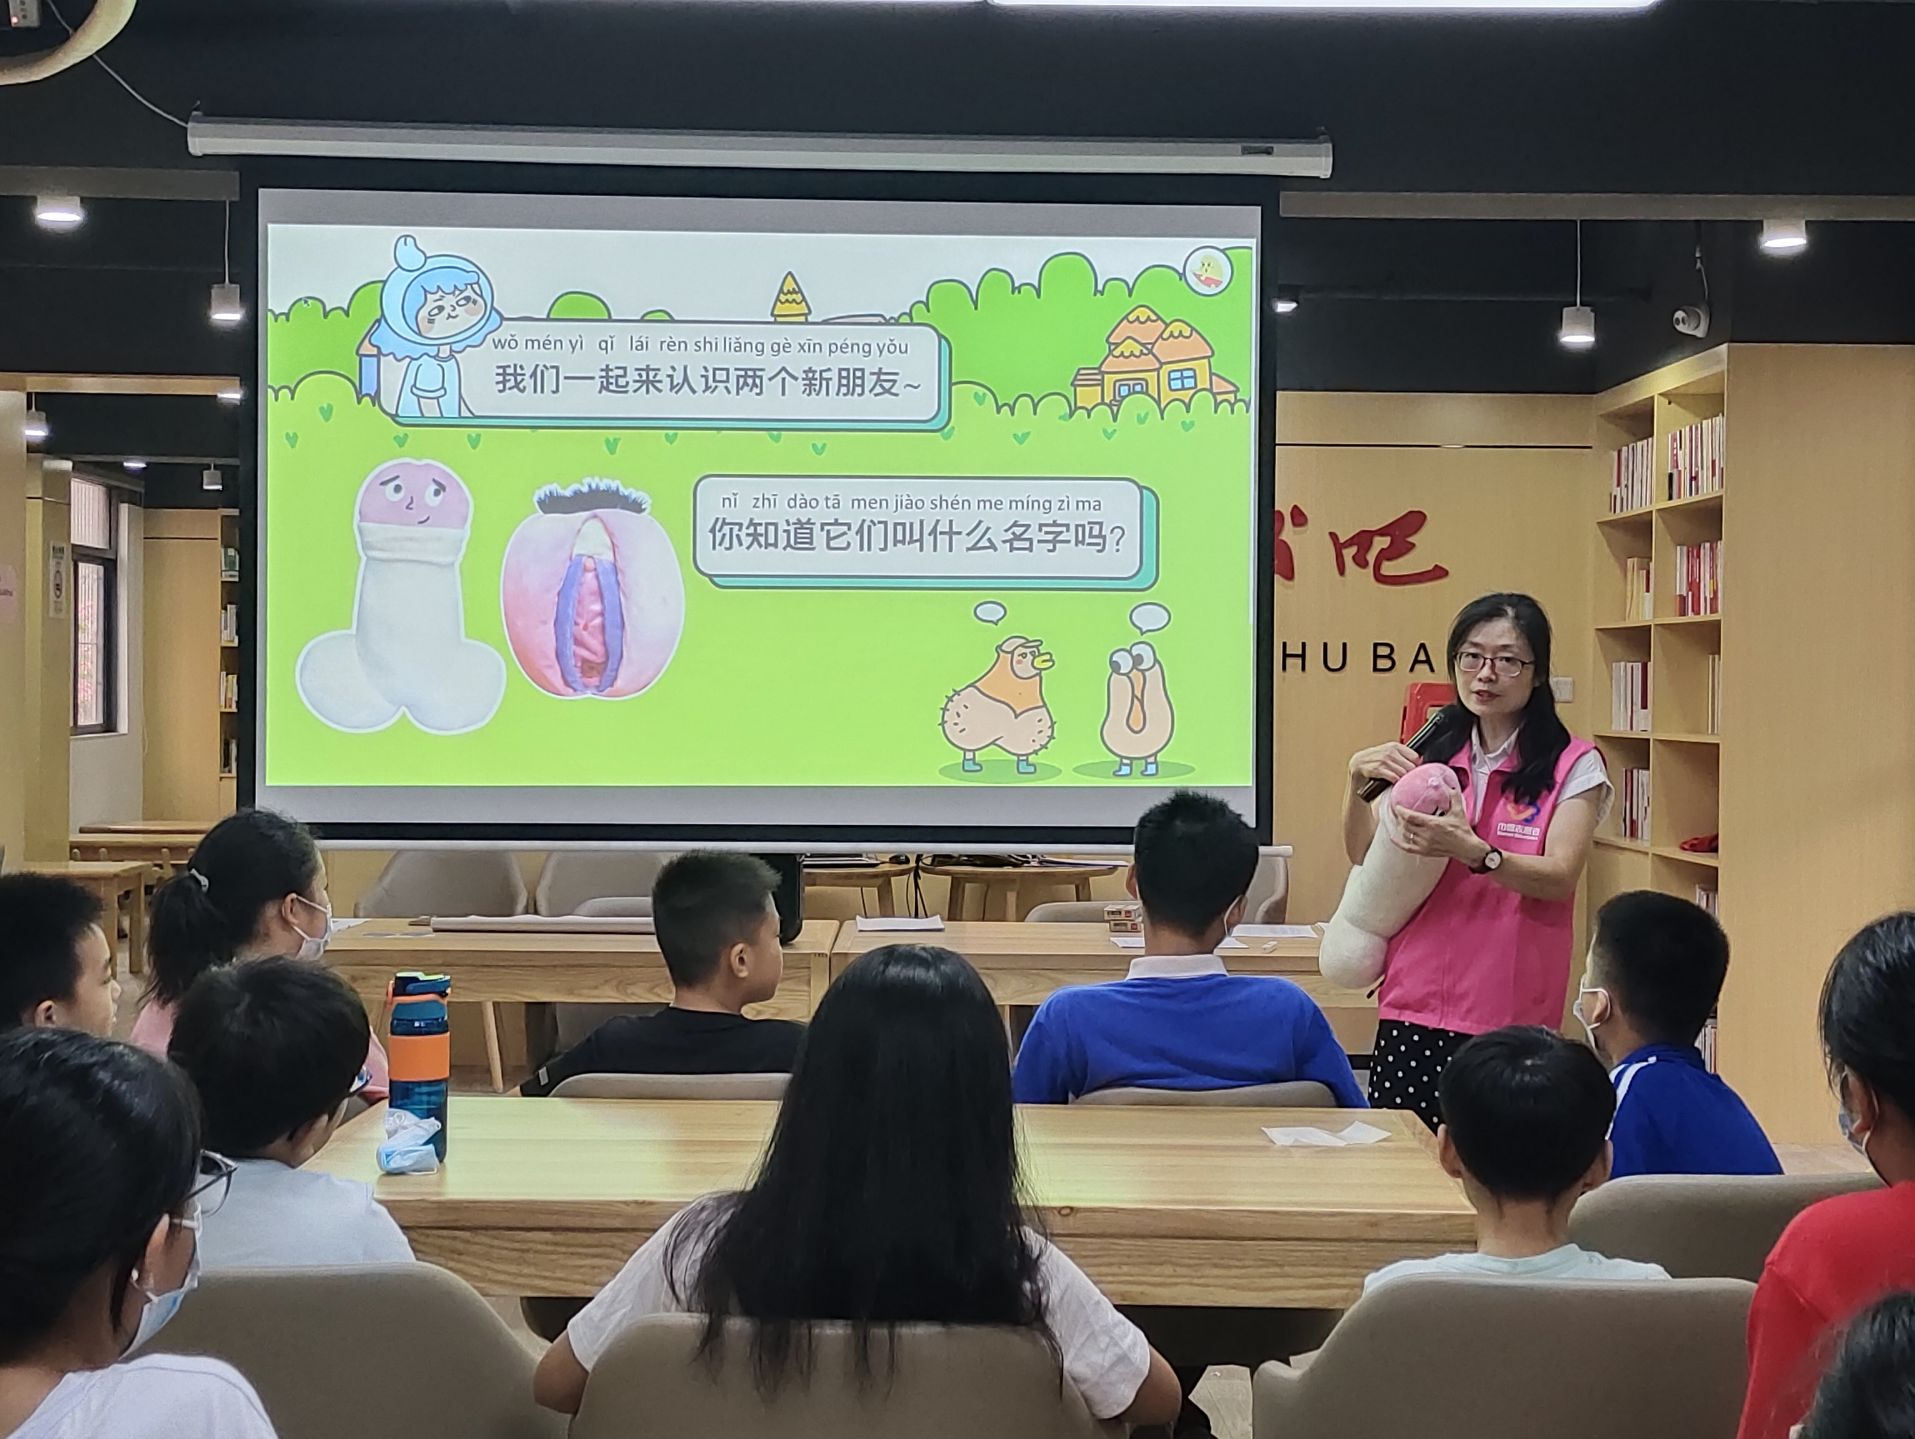 深圳龙华区大浪街道成立家庭性教育中心